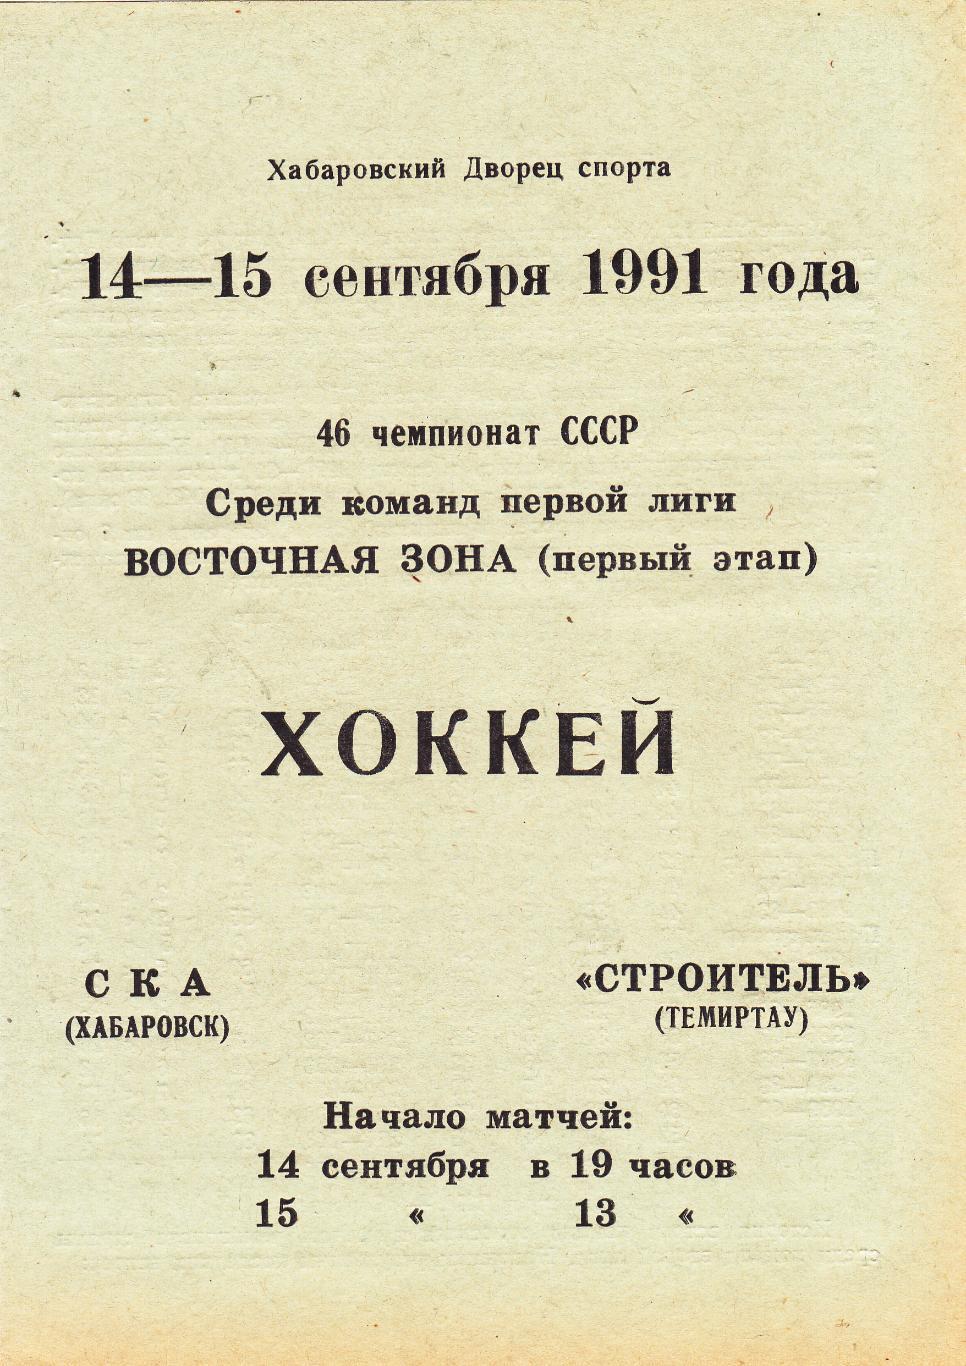 СКА (Хабаровск) - Строитель (Темиртау) 14-15.09.1991 (1 этап)